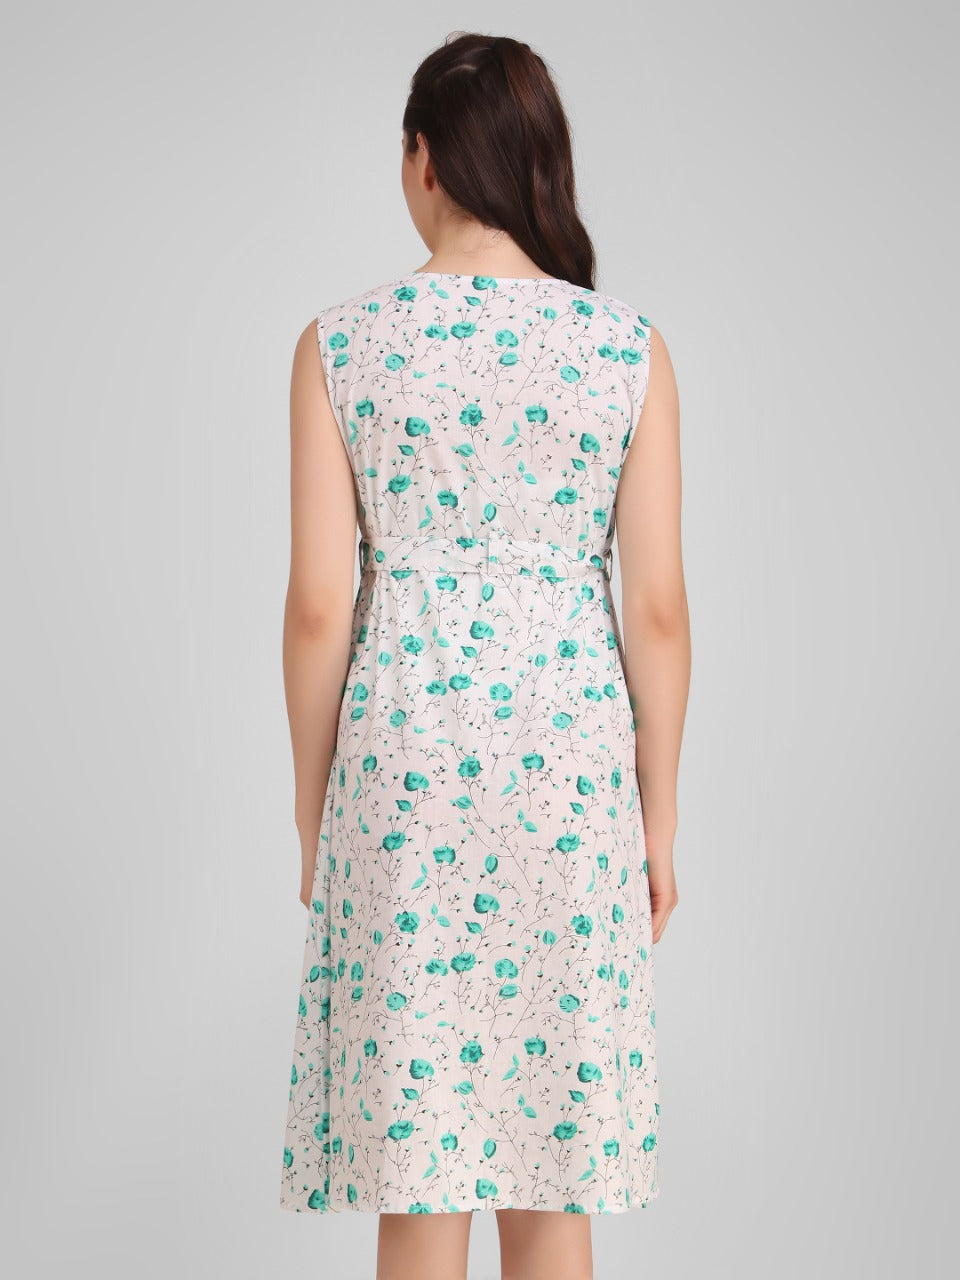 Ikat Hand Block Print Sleeveless 3 Tier Maxi Dress - Etsy